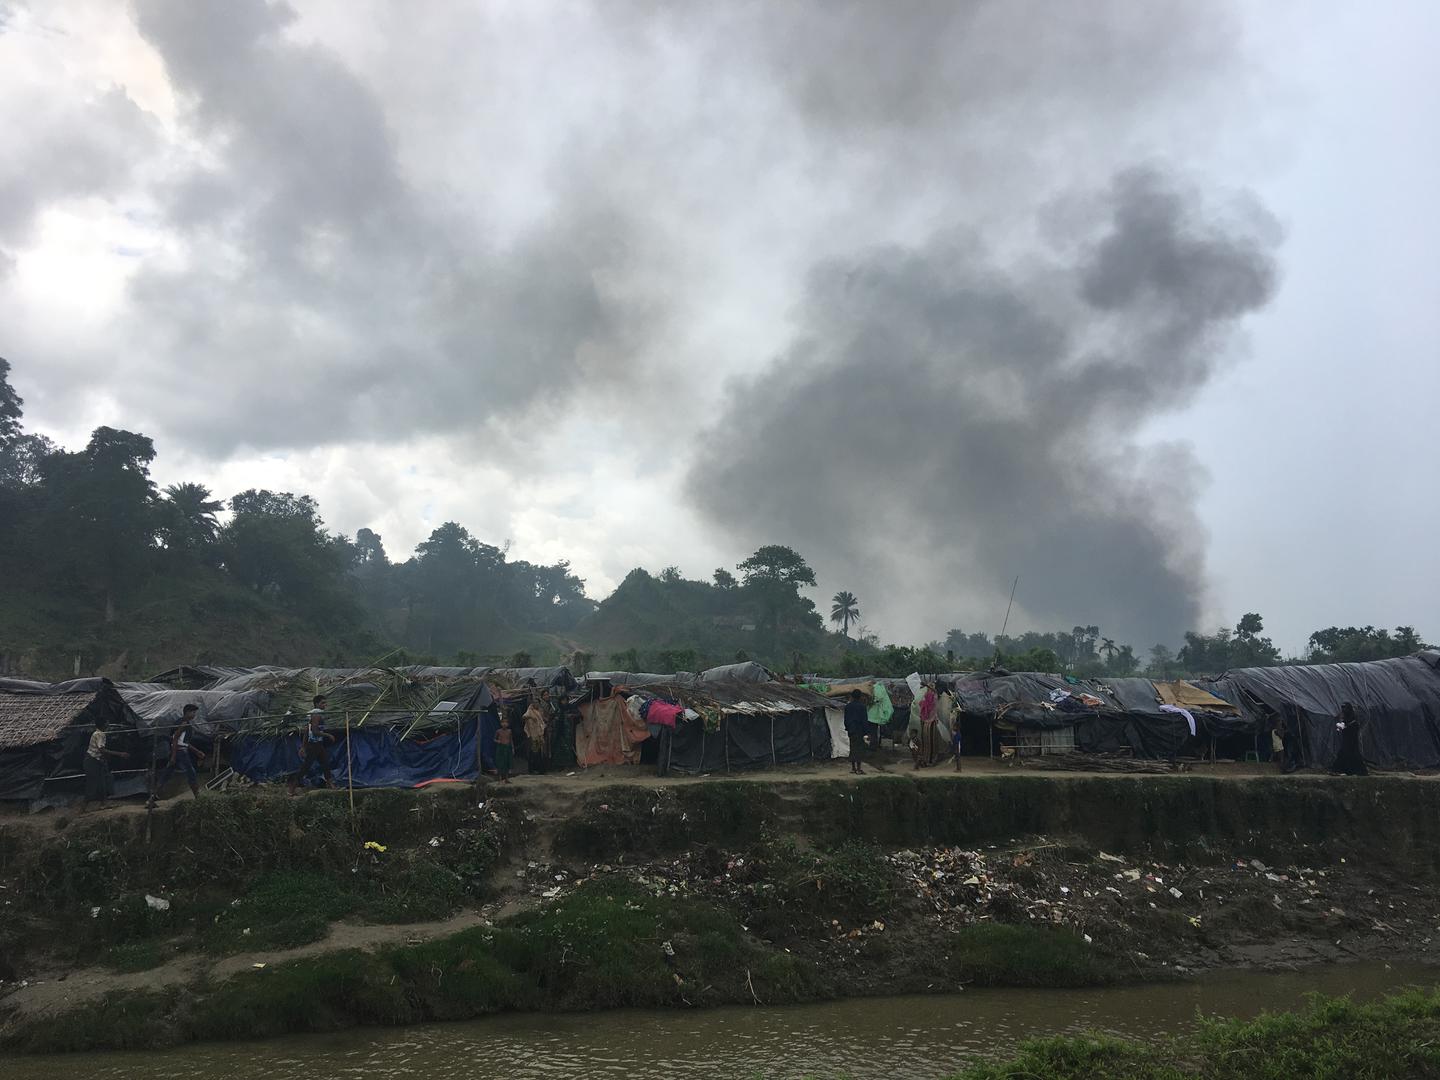 Des nuages de fumée s’élèvent au-dessus du village de Taung Pyo Let War en Birmanie, près de la frontière avec le Bangladesh, d’où cette photo a été prise.